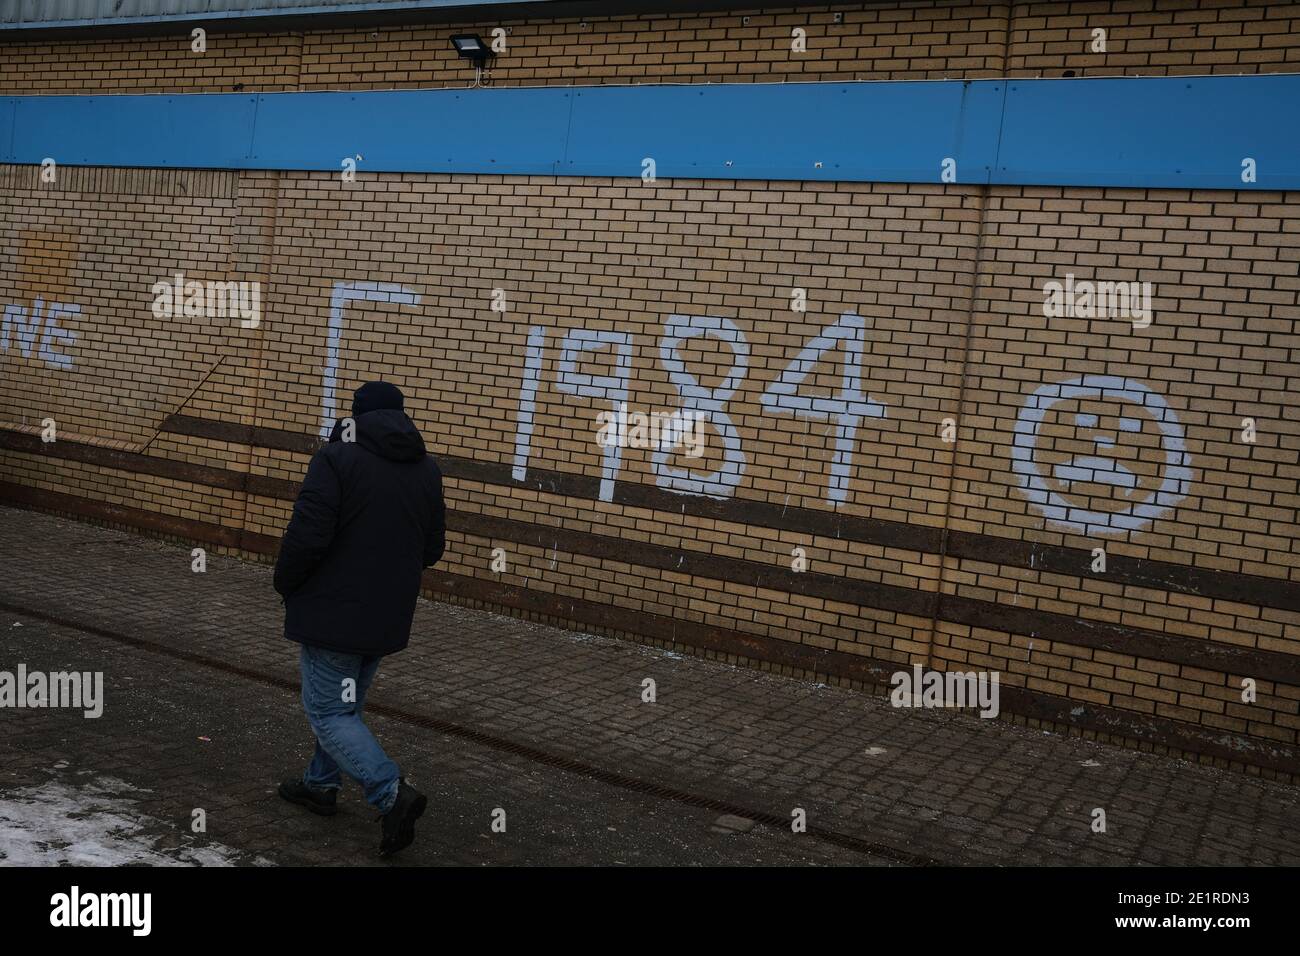 Glasgow, Royaume-Uni, 9 janvier 2021. Au cours de la semaine où le Royaume-Uni a vu des nombres records de cas de Covid-19 enregistrés, et des records quotidiens de décès, théorie de la conspiration graffiti déclarant Corona virus a hoax, Et comparer la situation au livre de George Orwell '1984', est apparu sur les murs de Drumchapelle dans le nord de la ville. Crédit photo : Jeremy Sutton-Hibbert/Alay Live News Banque D'Images